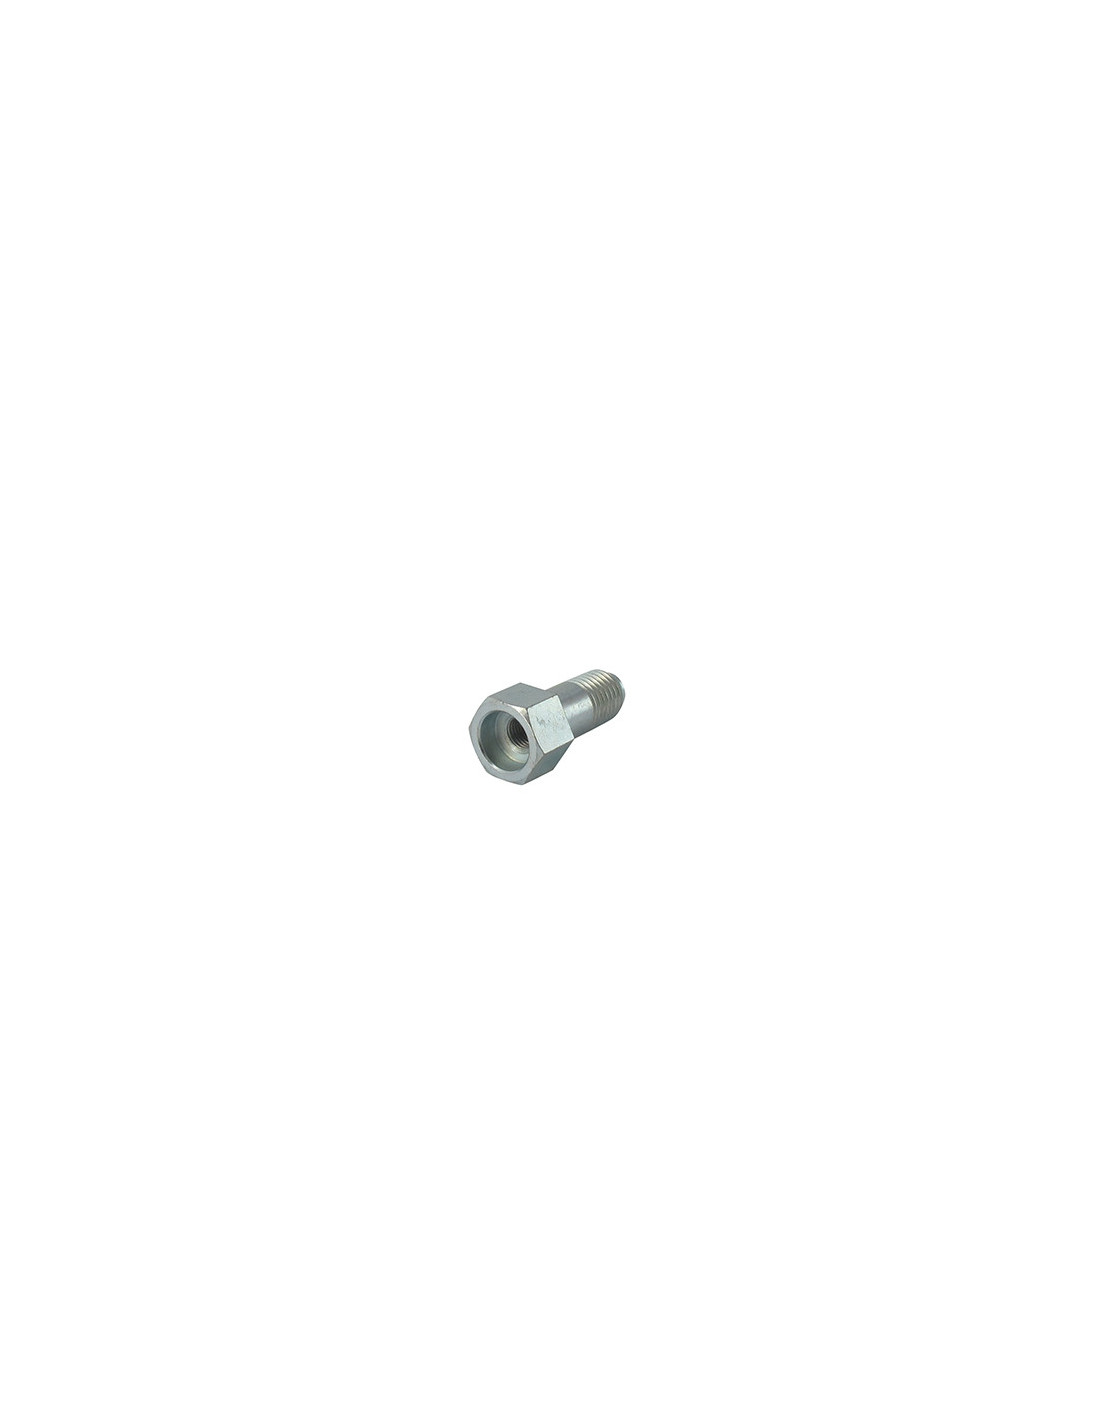 Adaptateur pour tête fil nylon à bouton métal TECOMEC - M10 x 1,25 gauche  femelle - 1602939